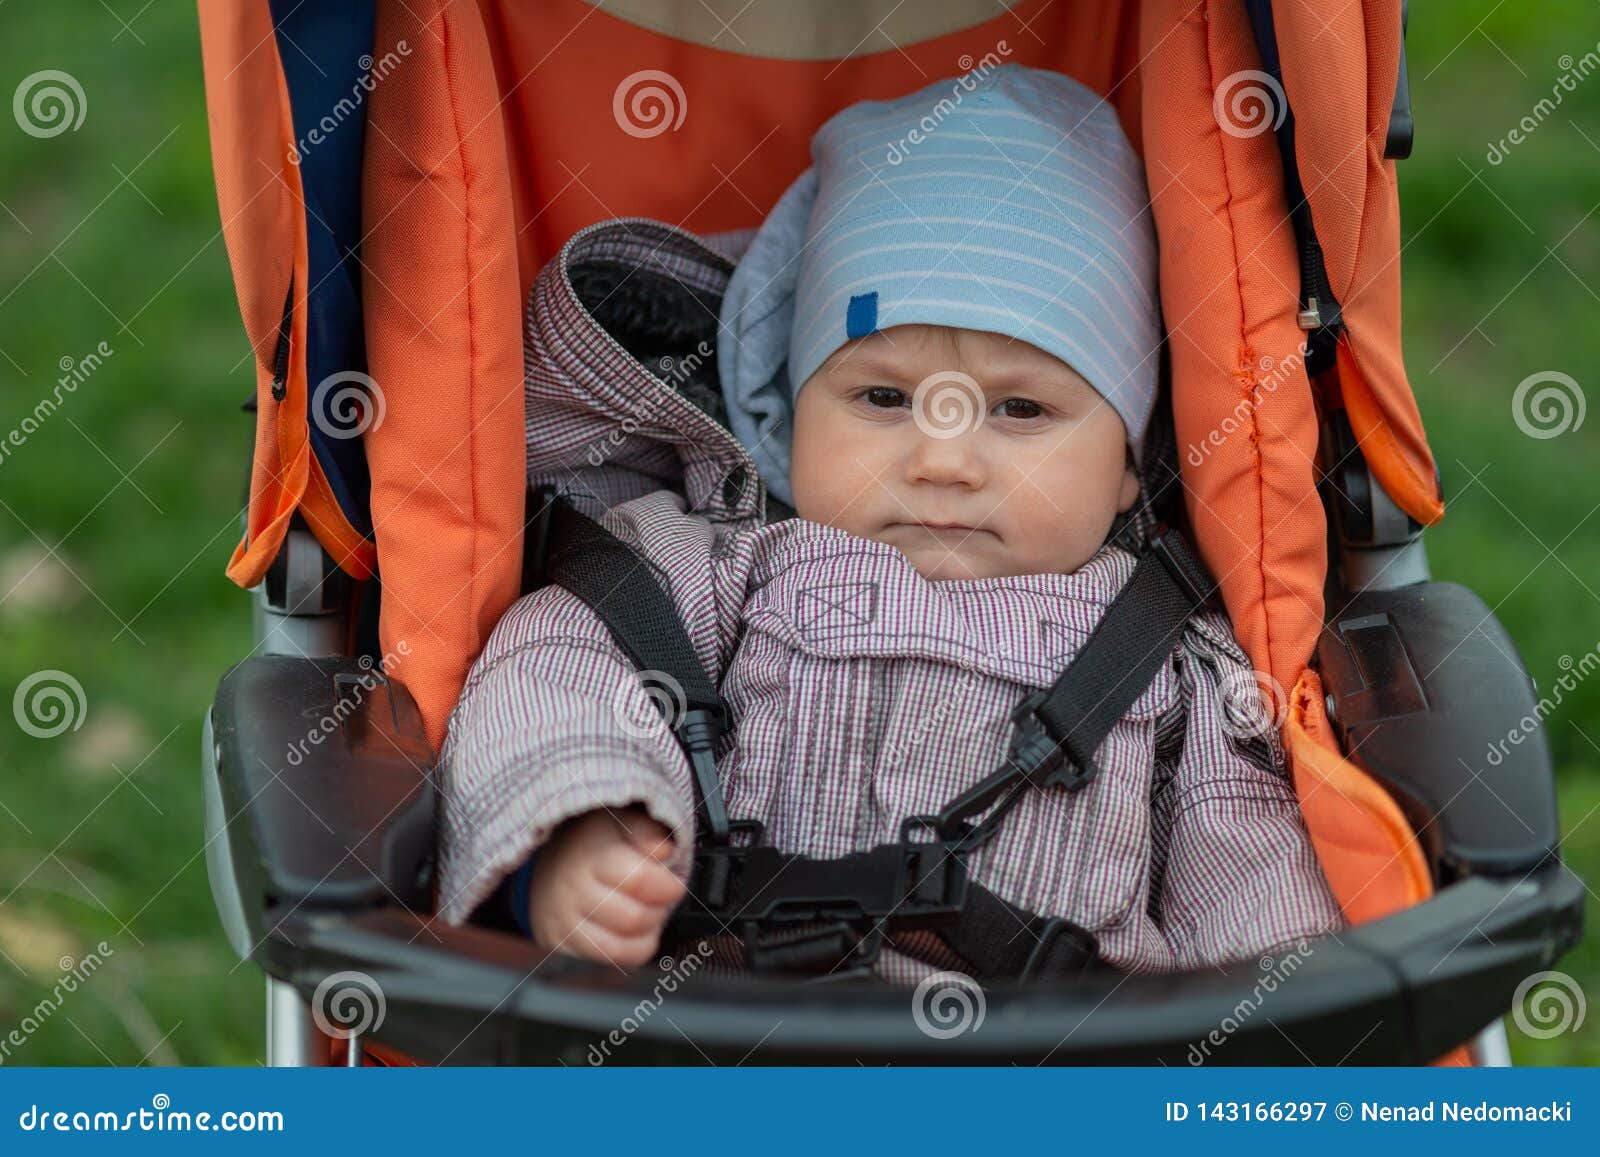 cute baby boy strollers